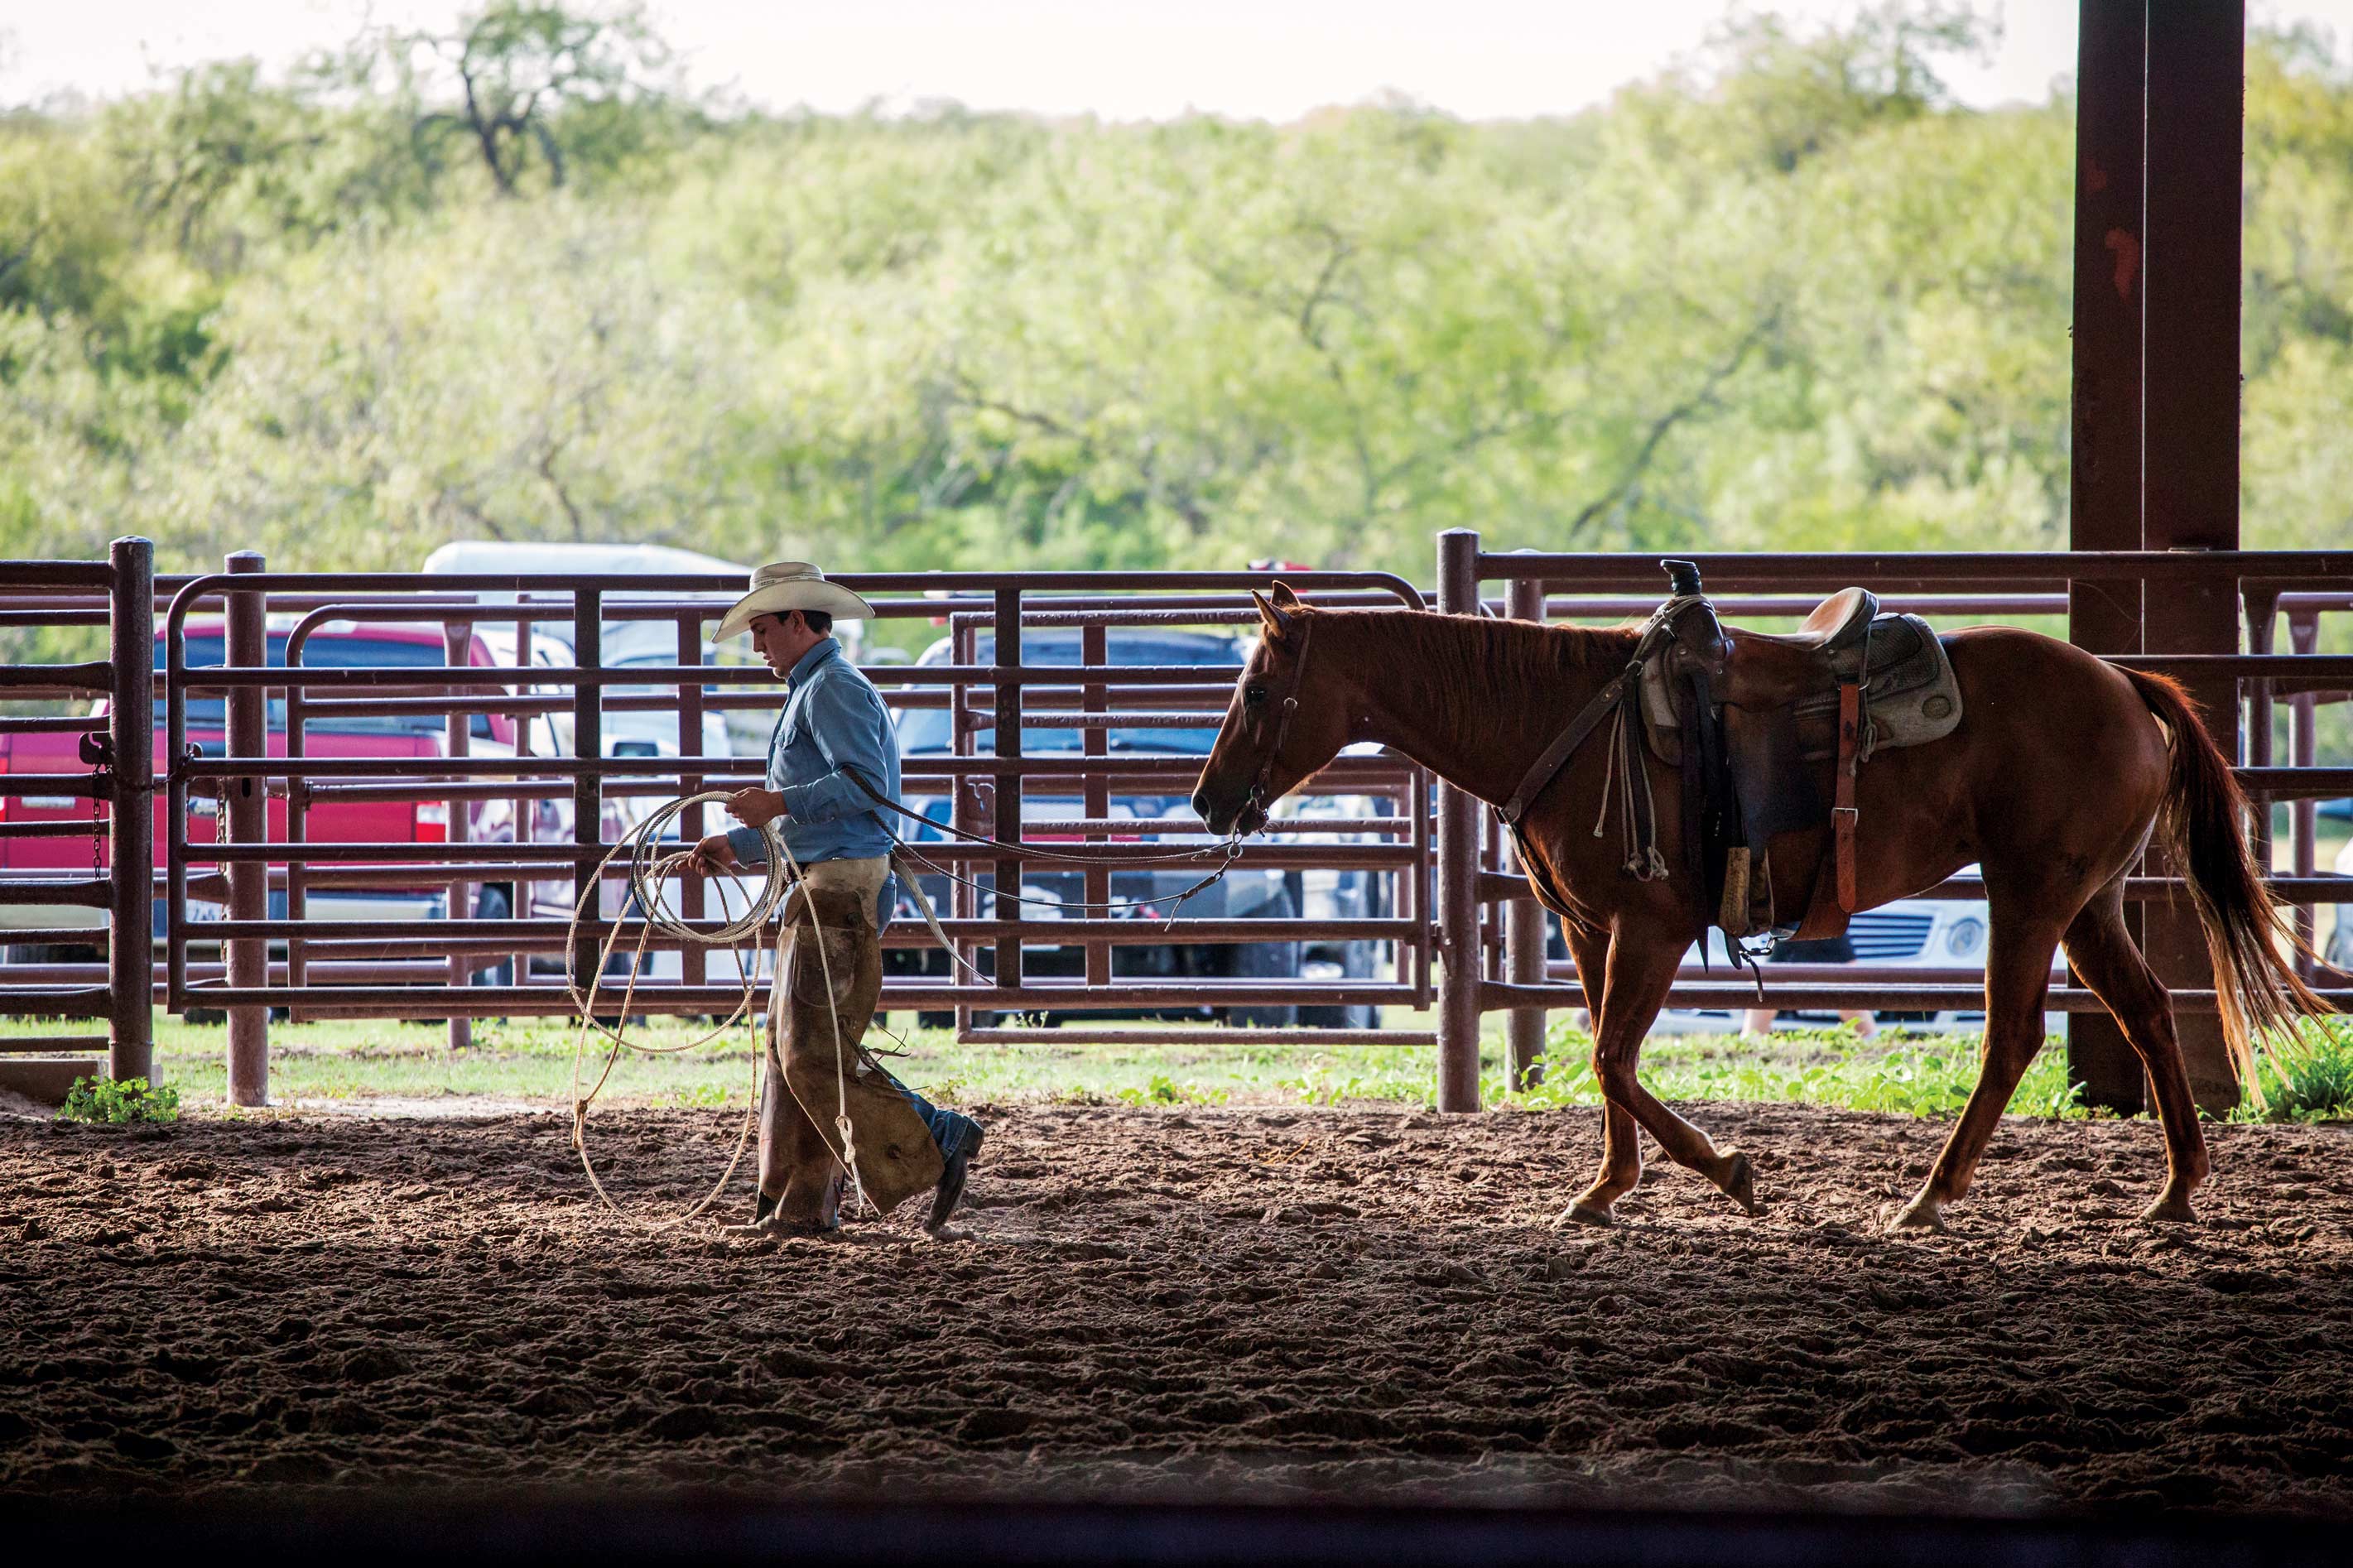 A cowboy leads a horse through a barn